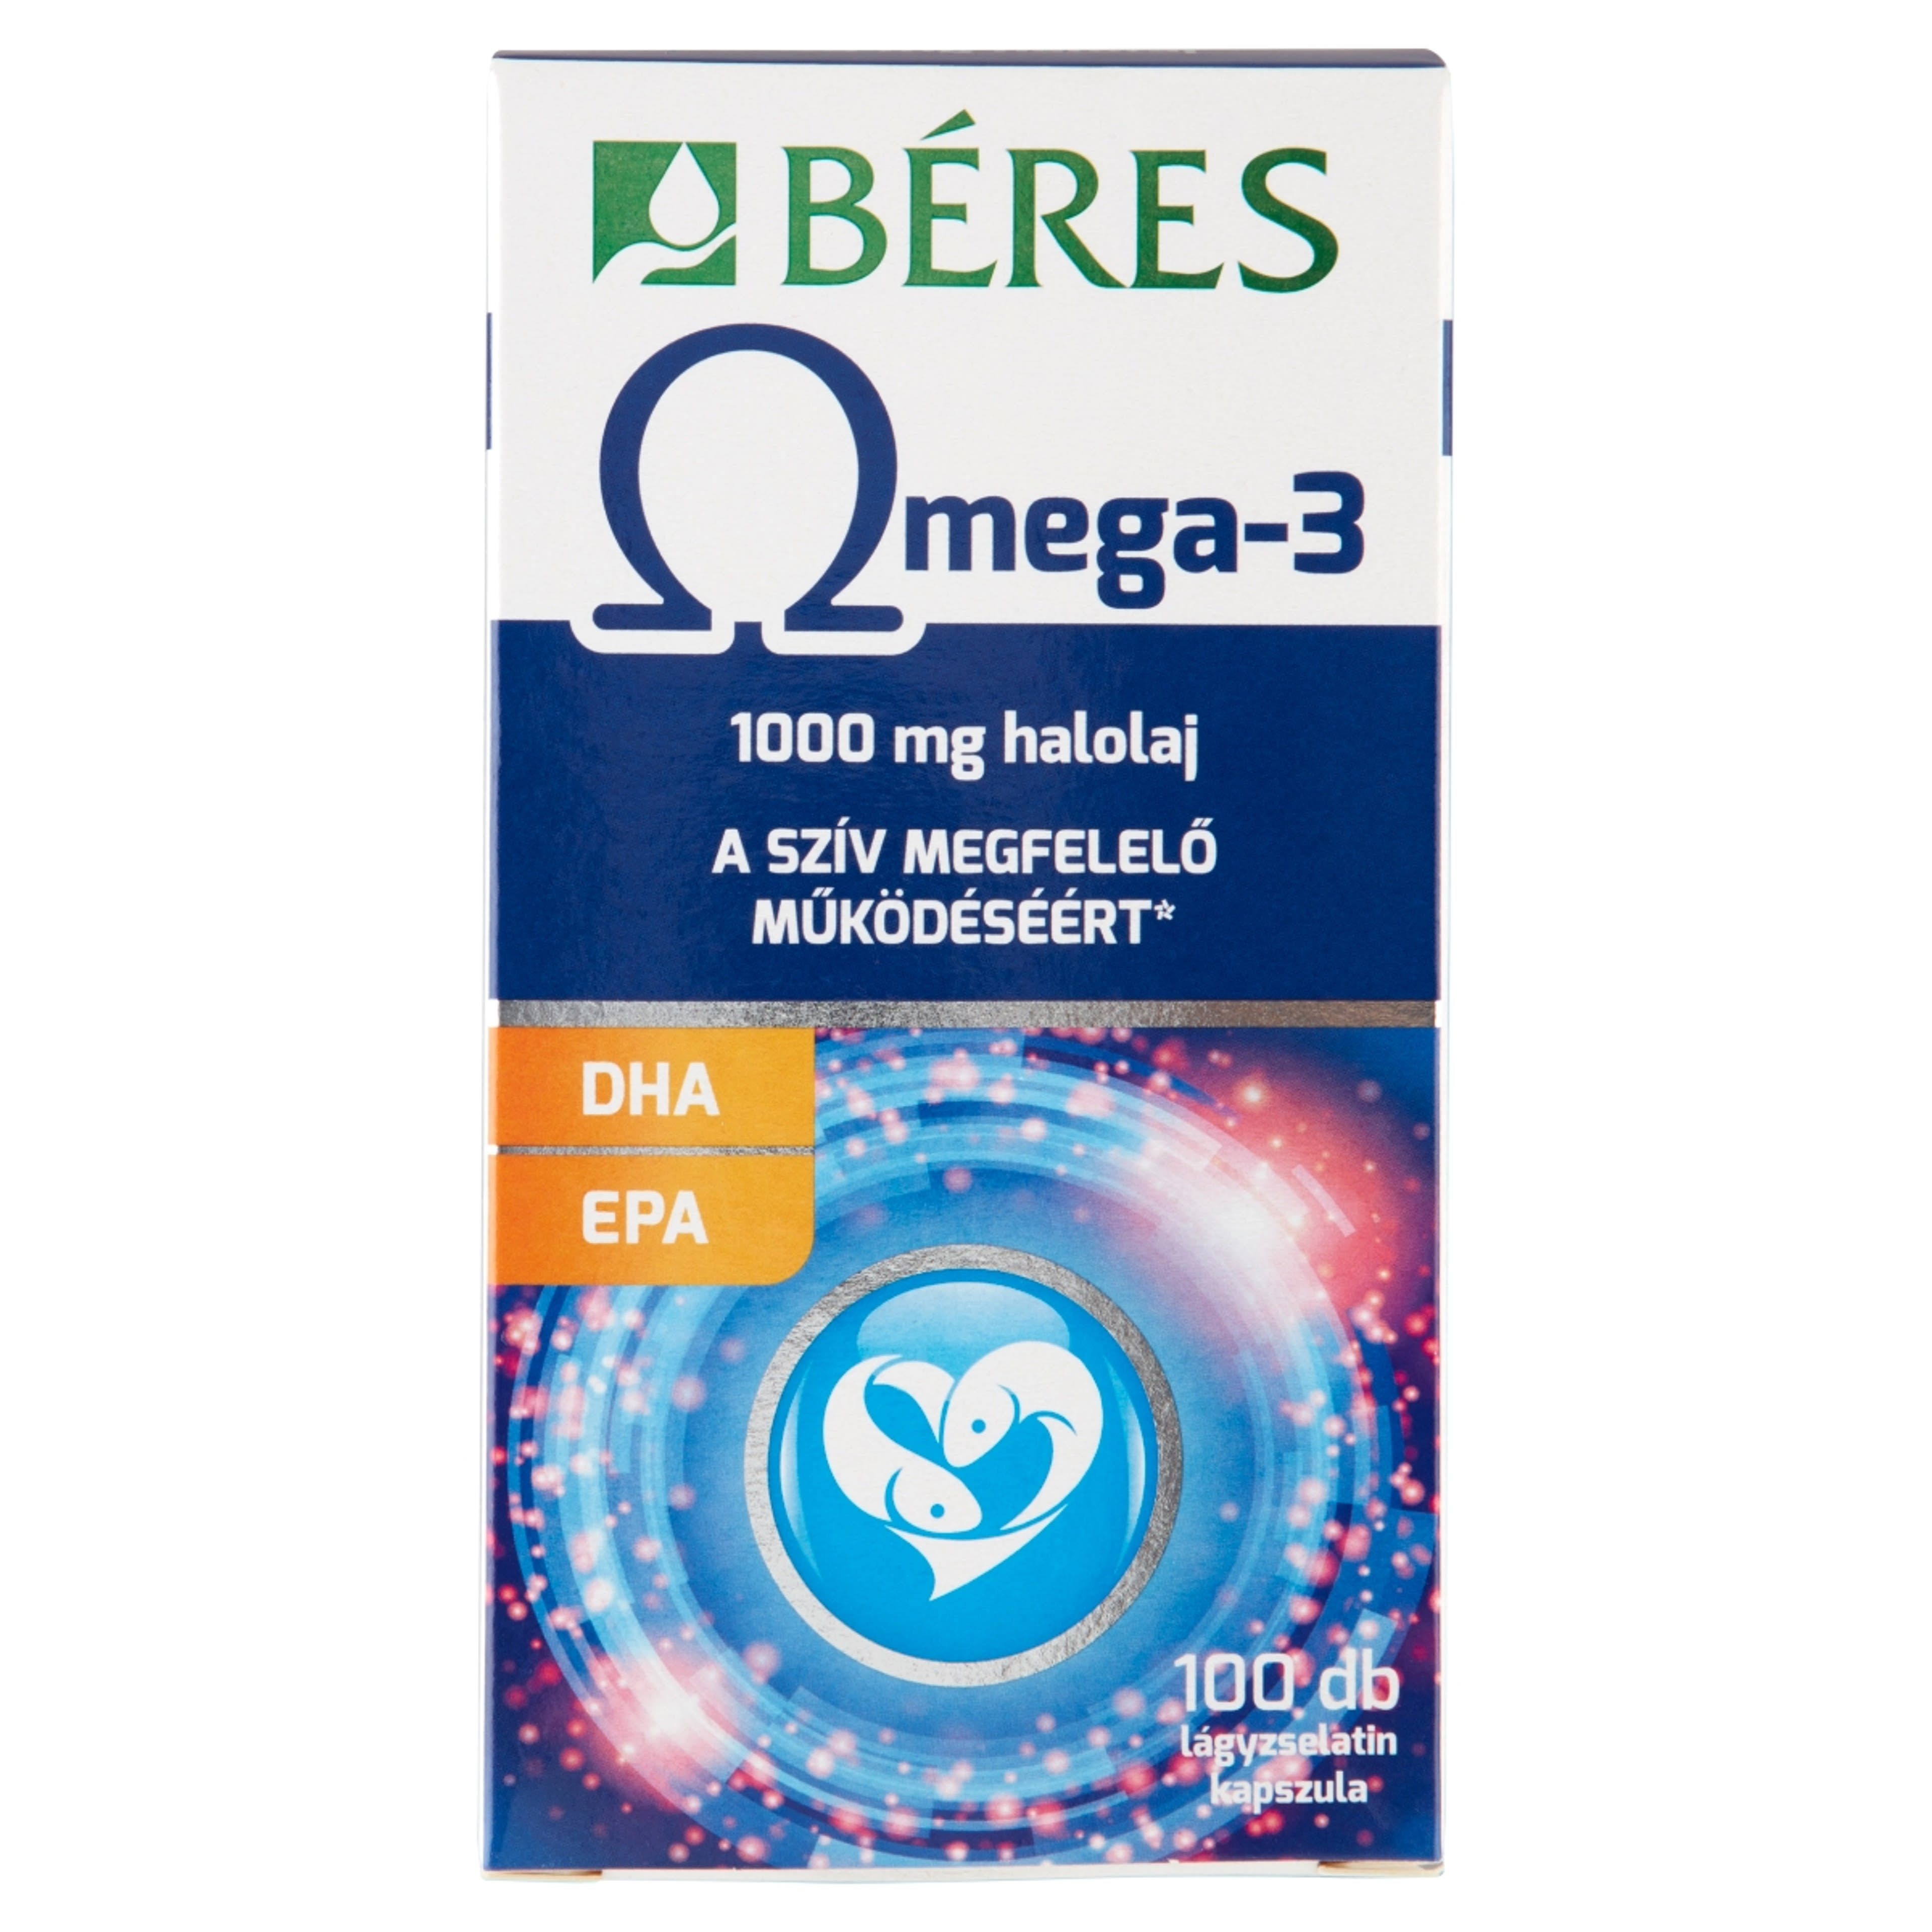 Béres Omega 3 lágyzselatin kapszula - 100 db